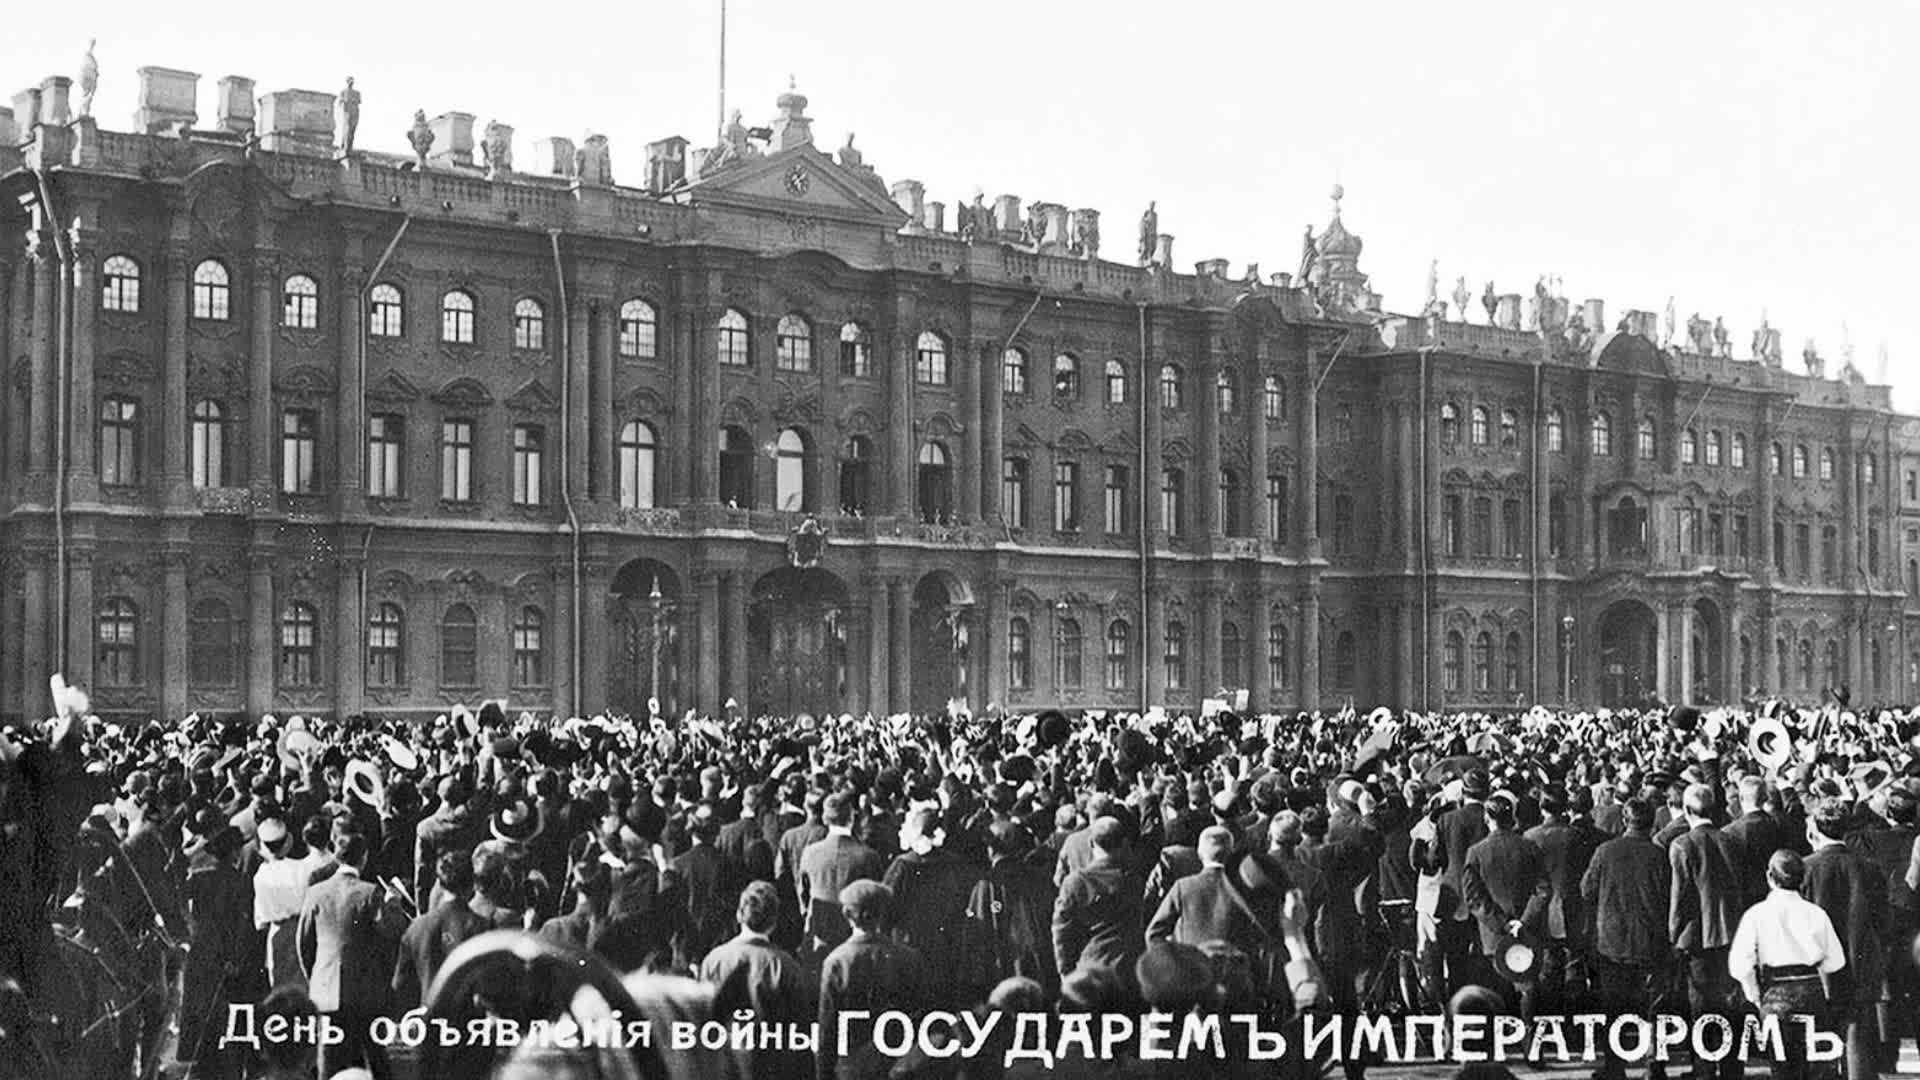 Петербург в годы первой мировой. Дворцовая площадь объявление войны 1914.